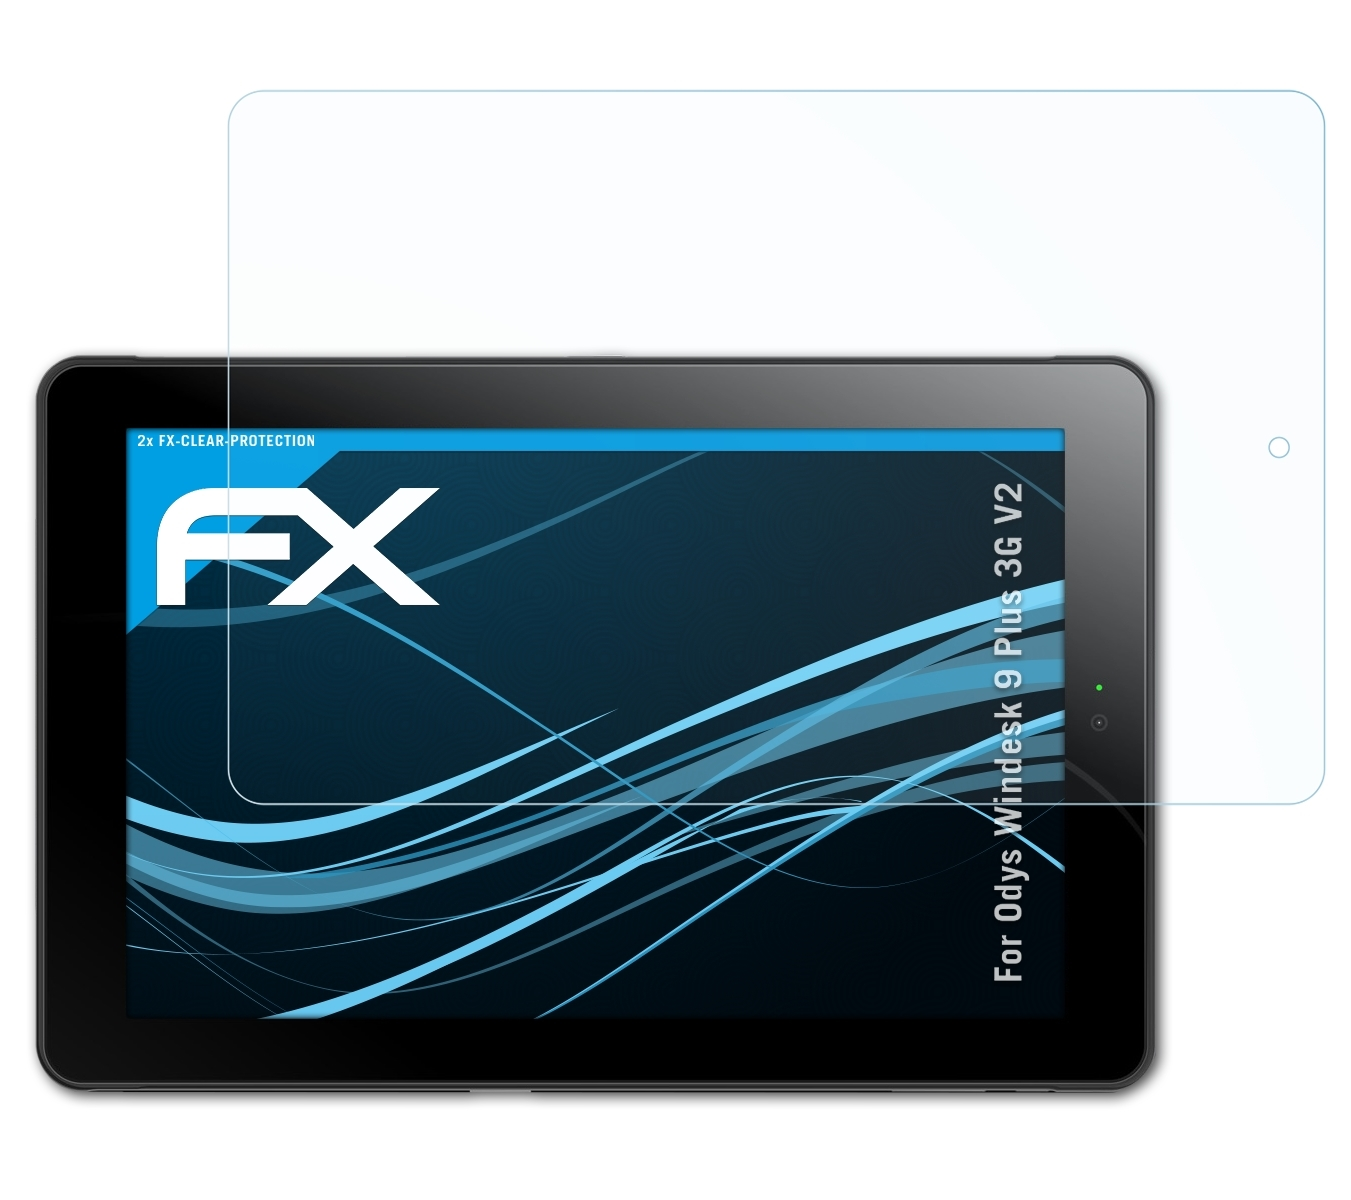 2x Odys Plus V2) 3G Displayschutz(für FX-Clear Windesk 9 ATFOLIX